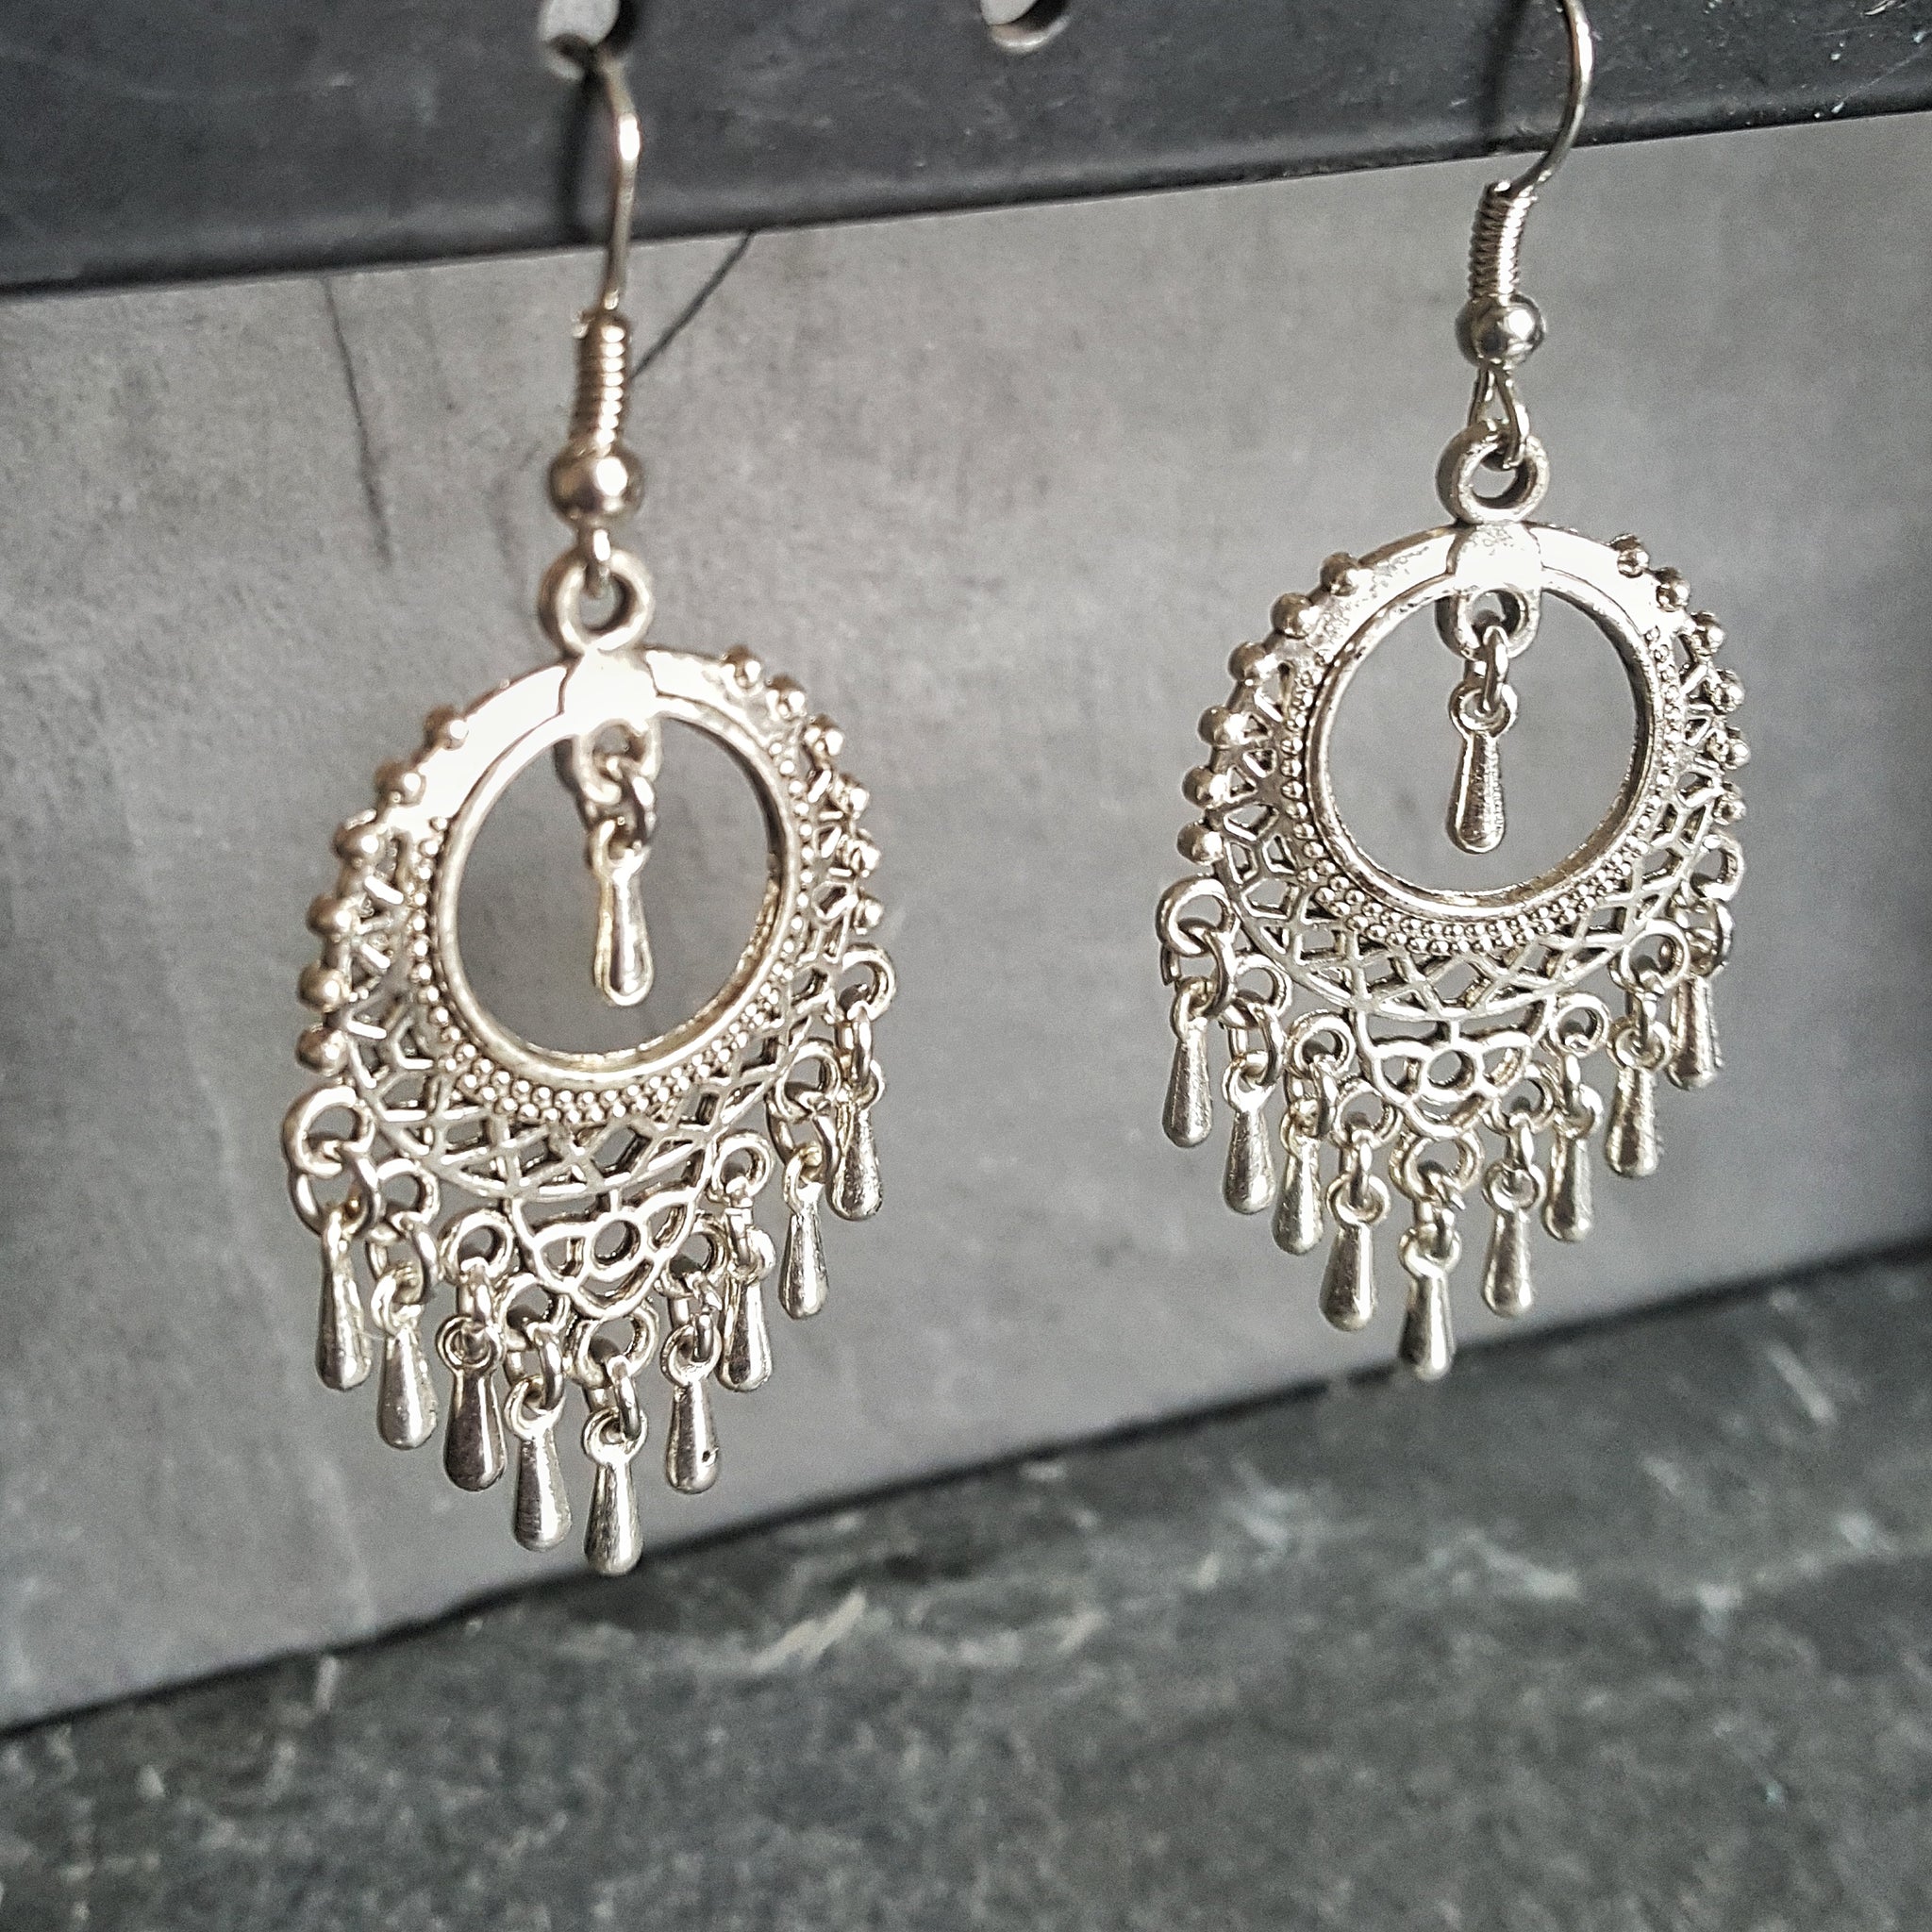 Ornate Silver Boho Chandelier Earrings Bohemian Jewelry - DRAVYNMOOR